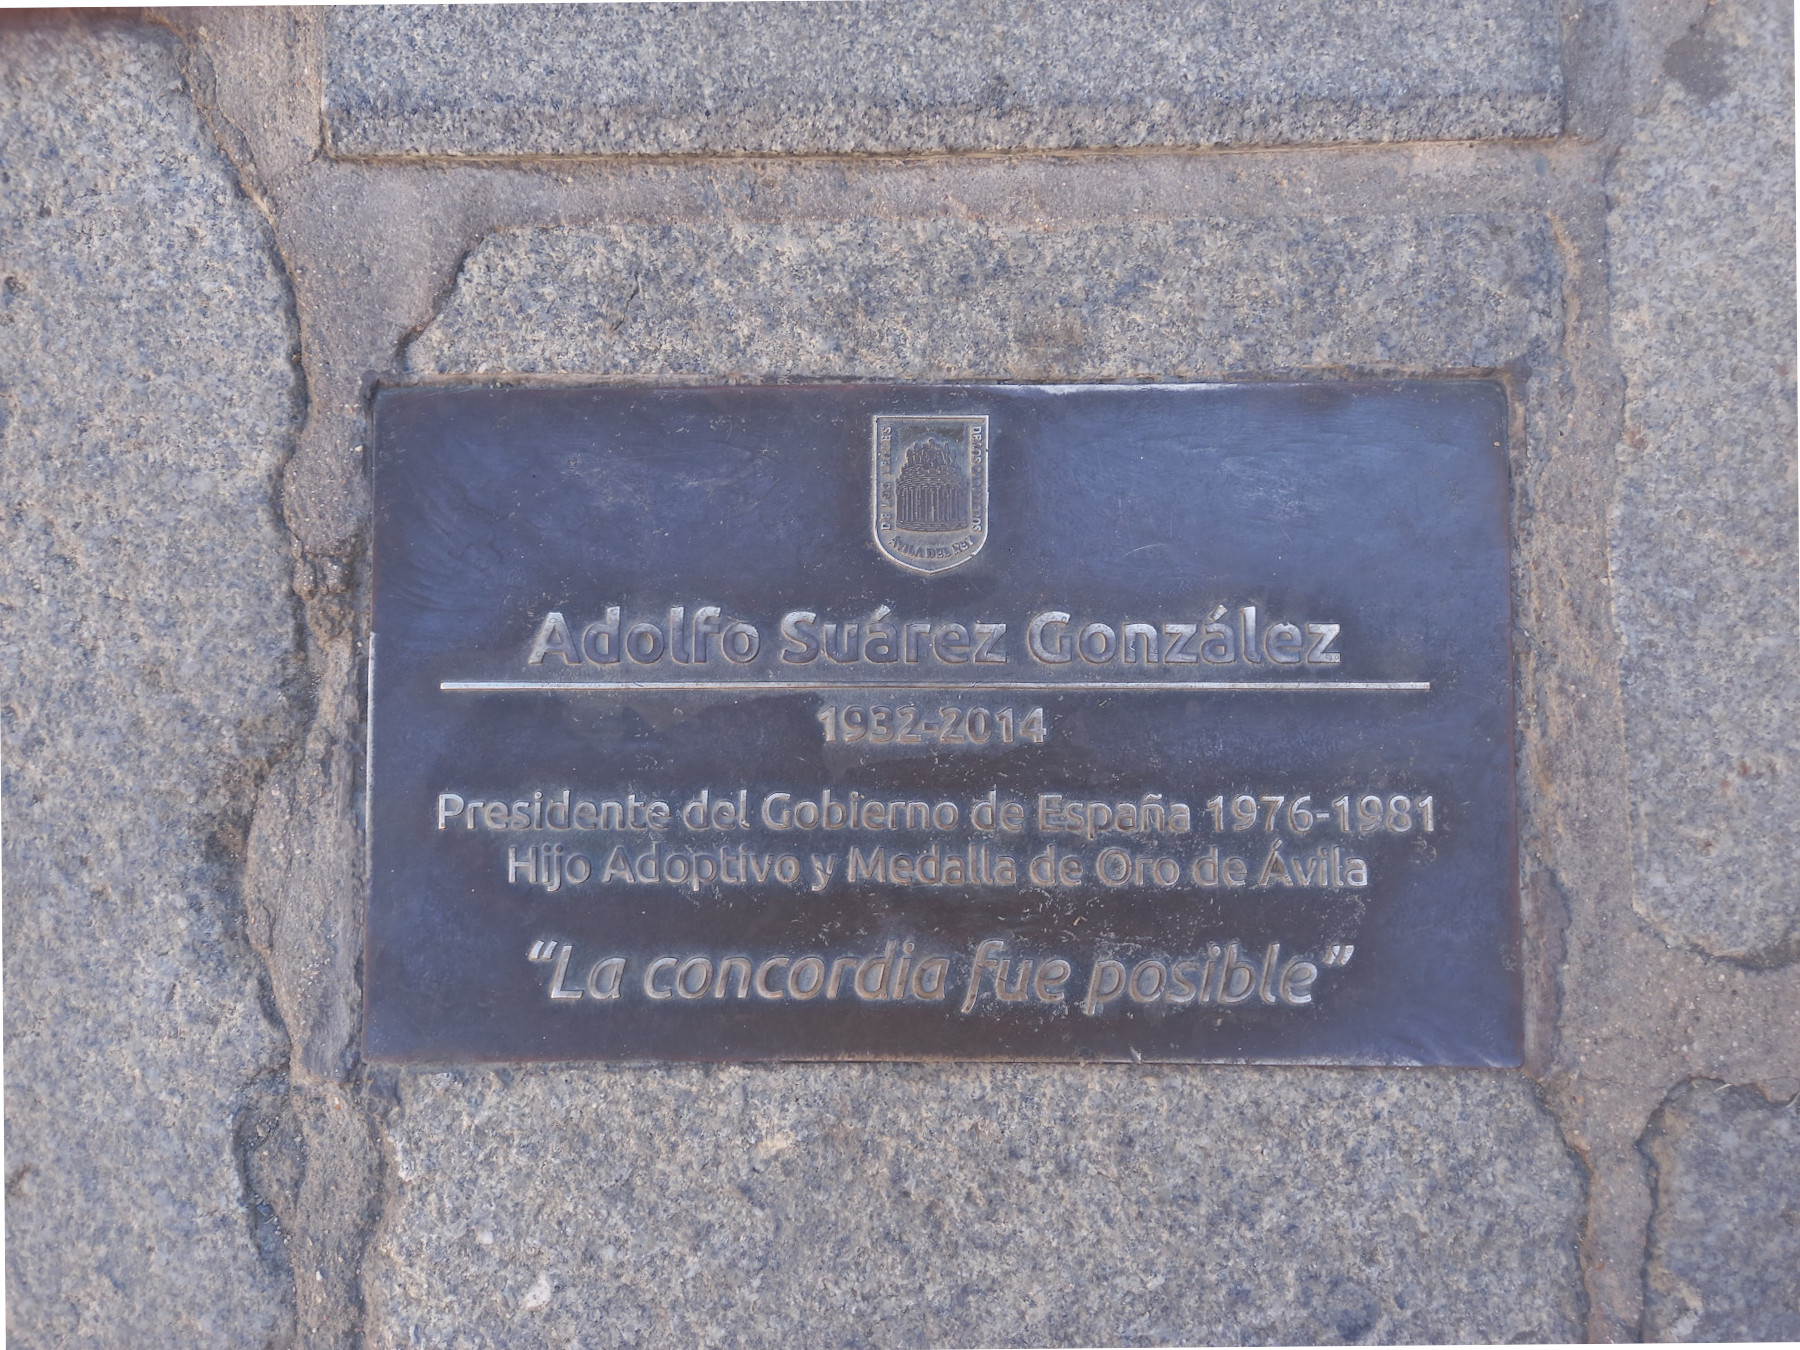 Placa en la estatua de Adolfo Suárez en Ávila. Vía José Antonio Hernández de la Moya.